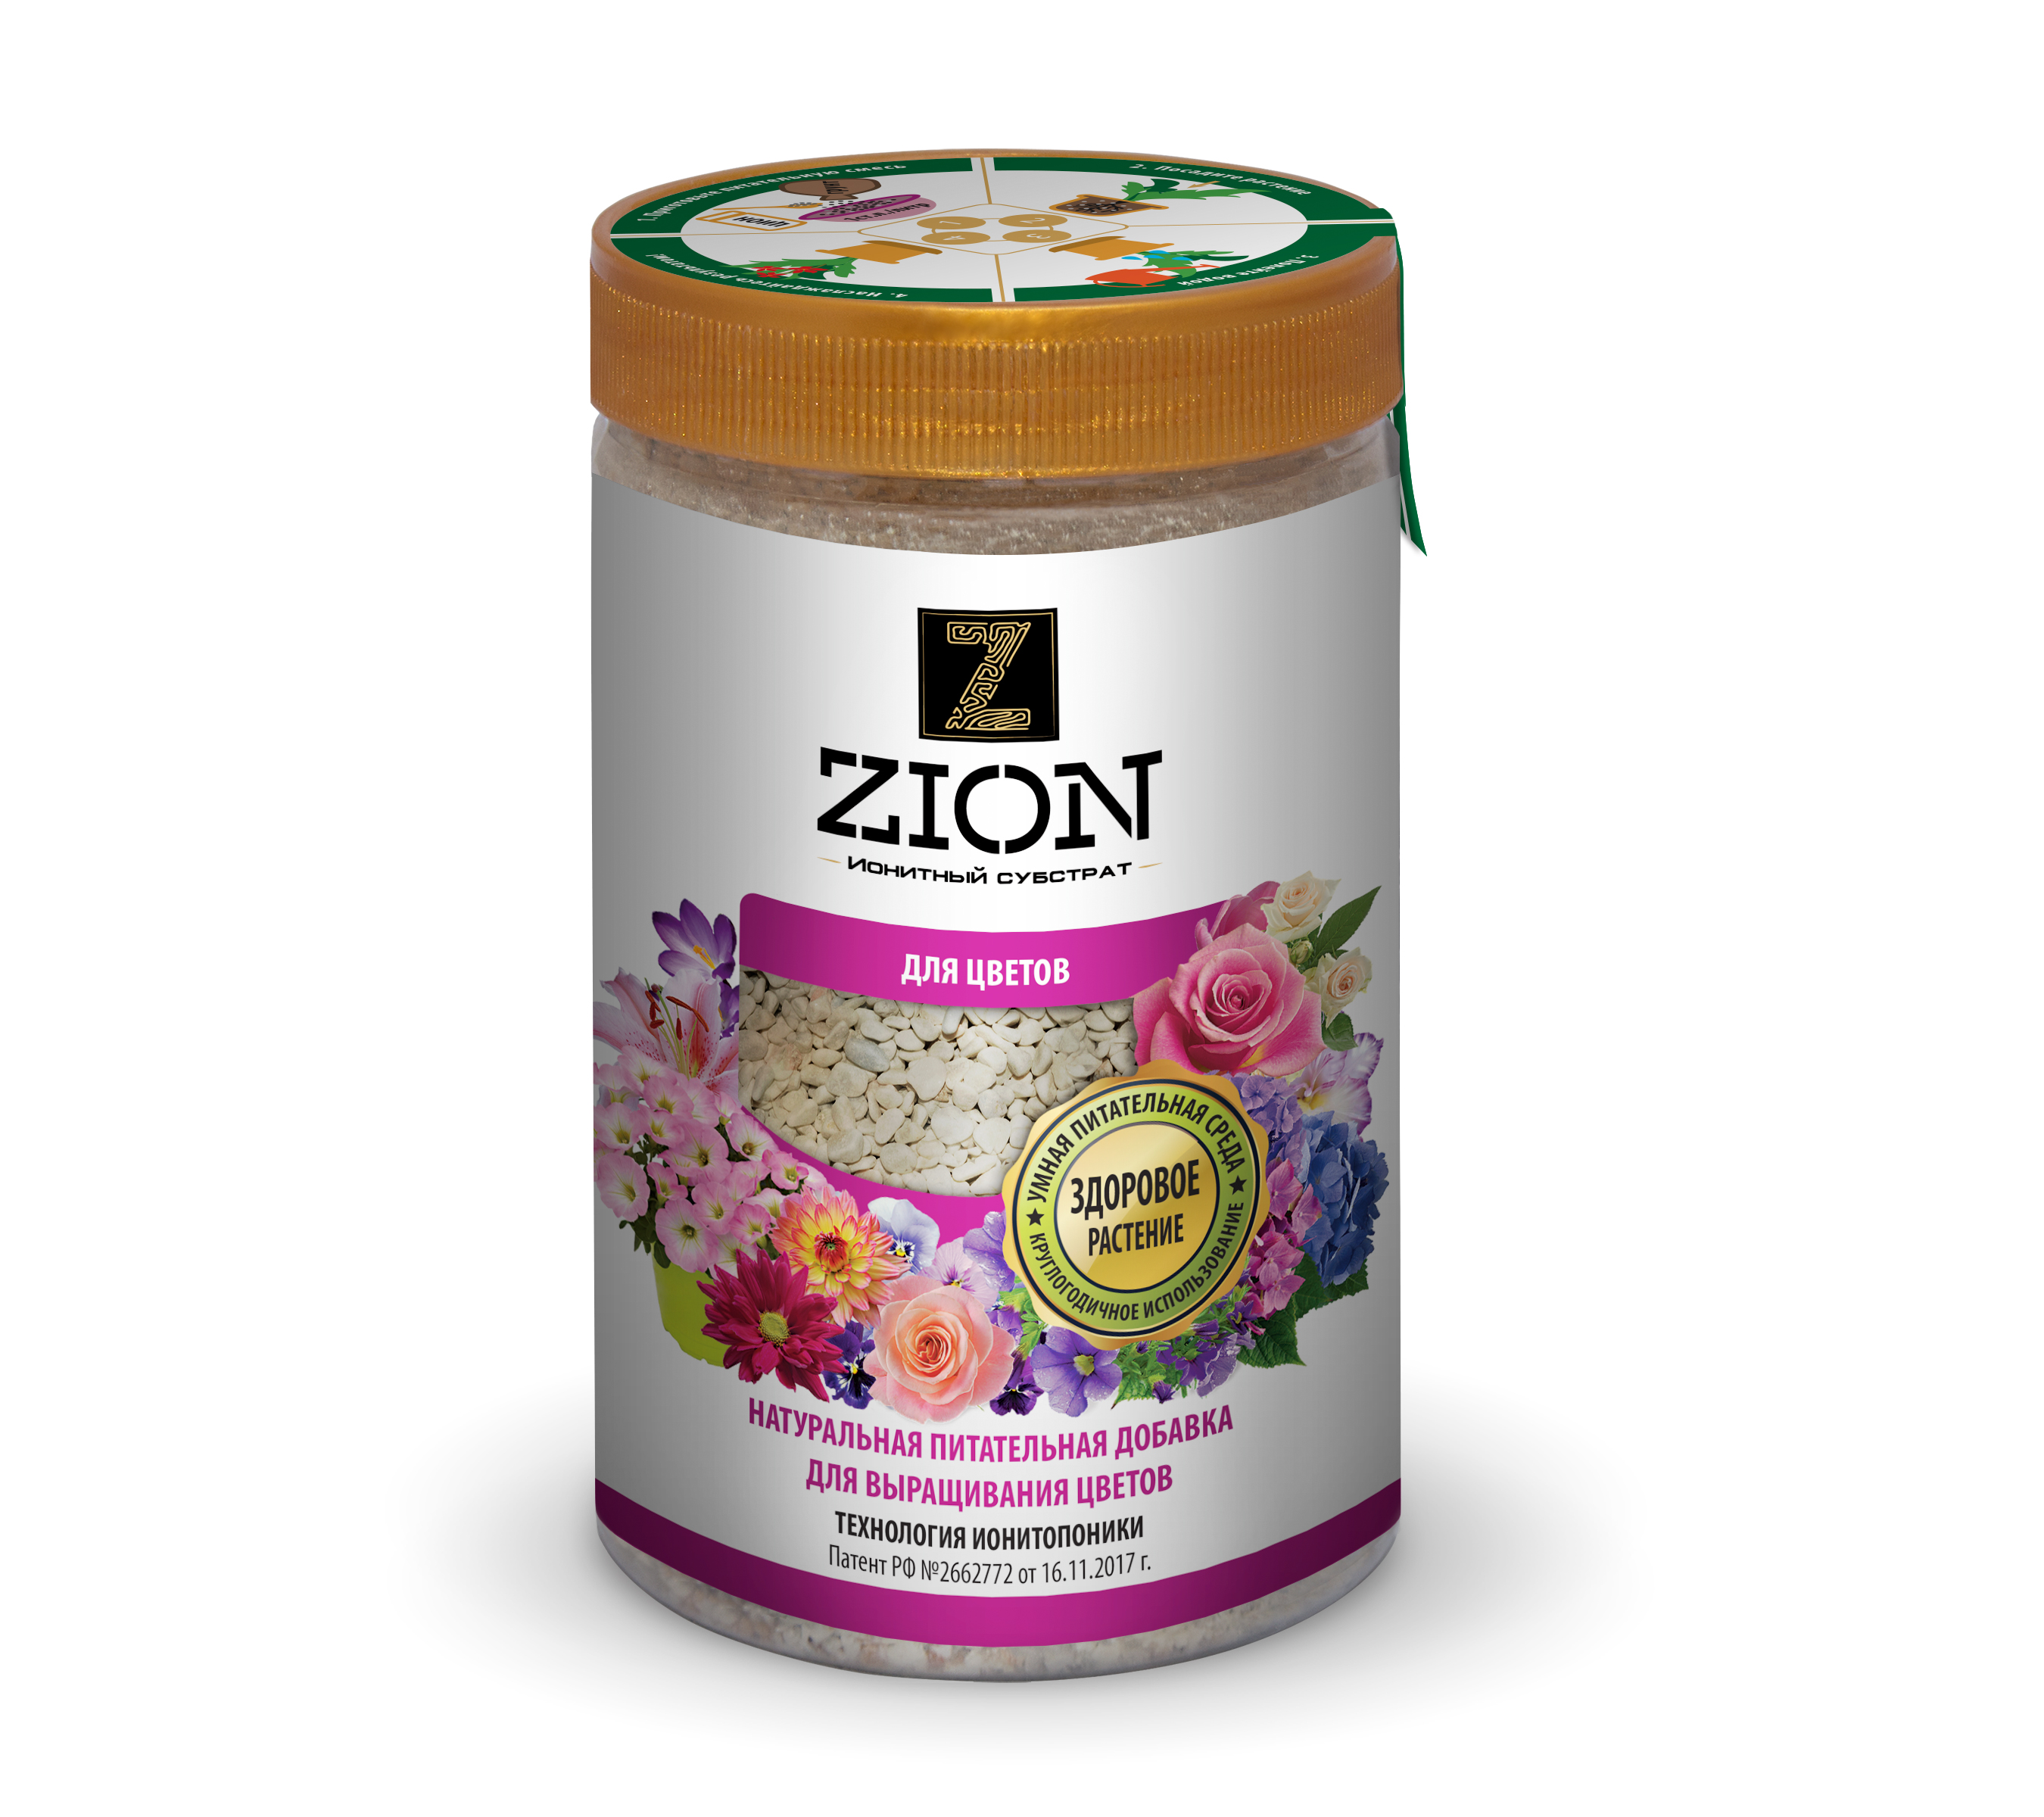 фото Питательная добавка для растений zion цион "для цветов" и цветочной рассады 700г